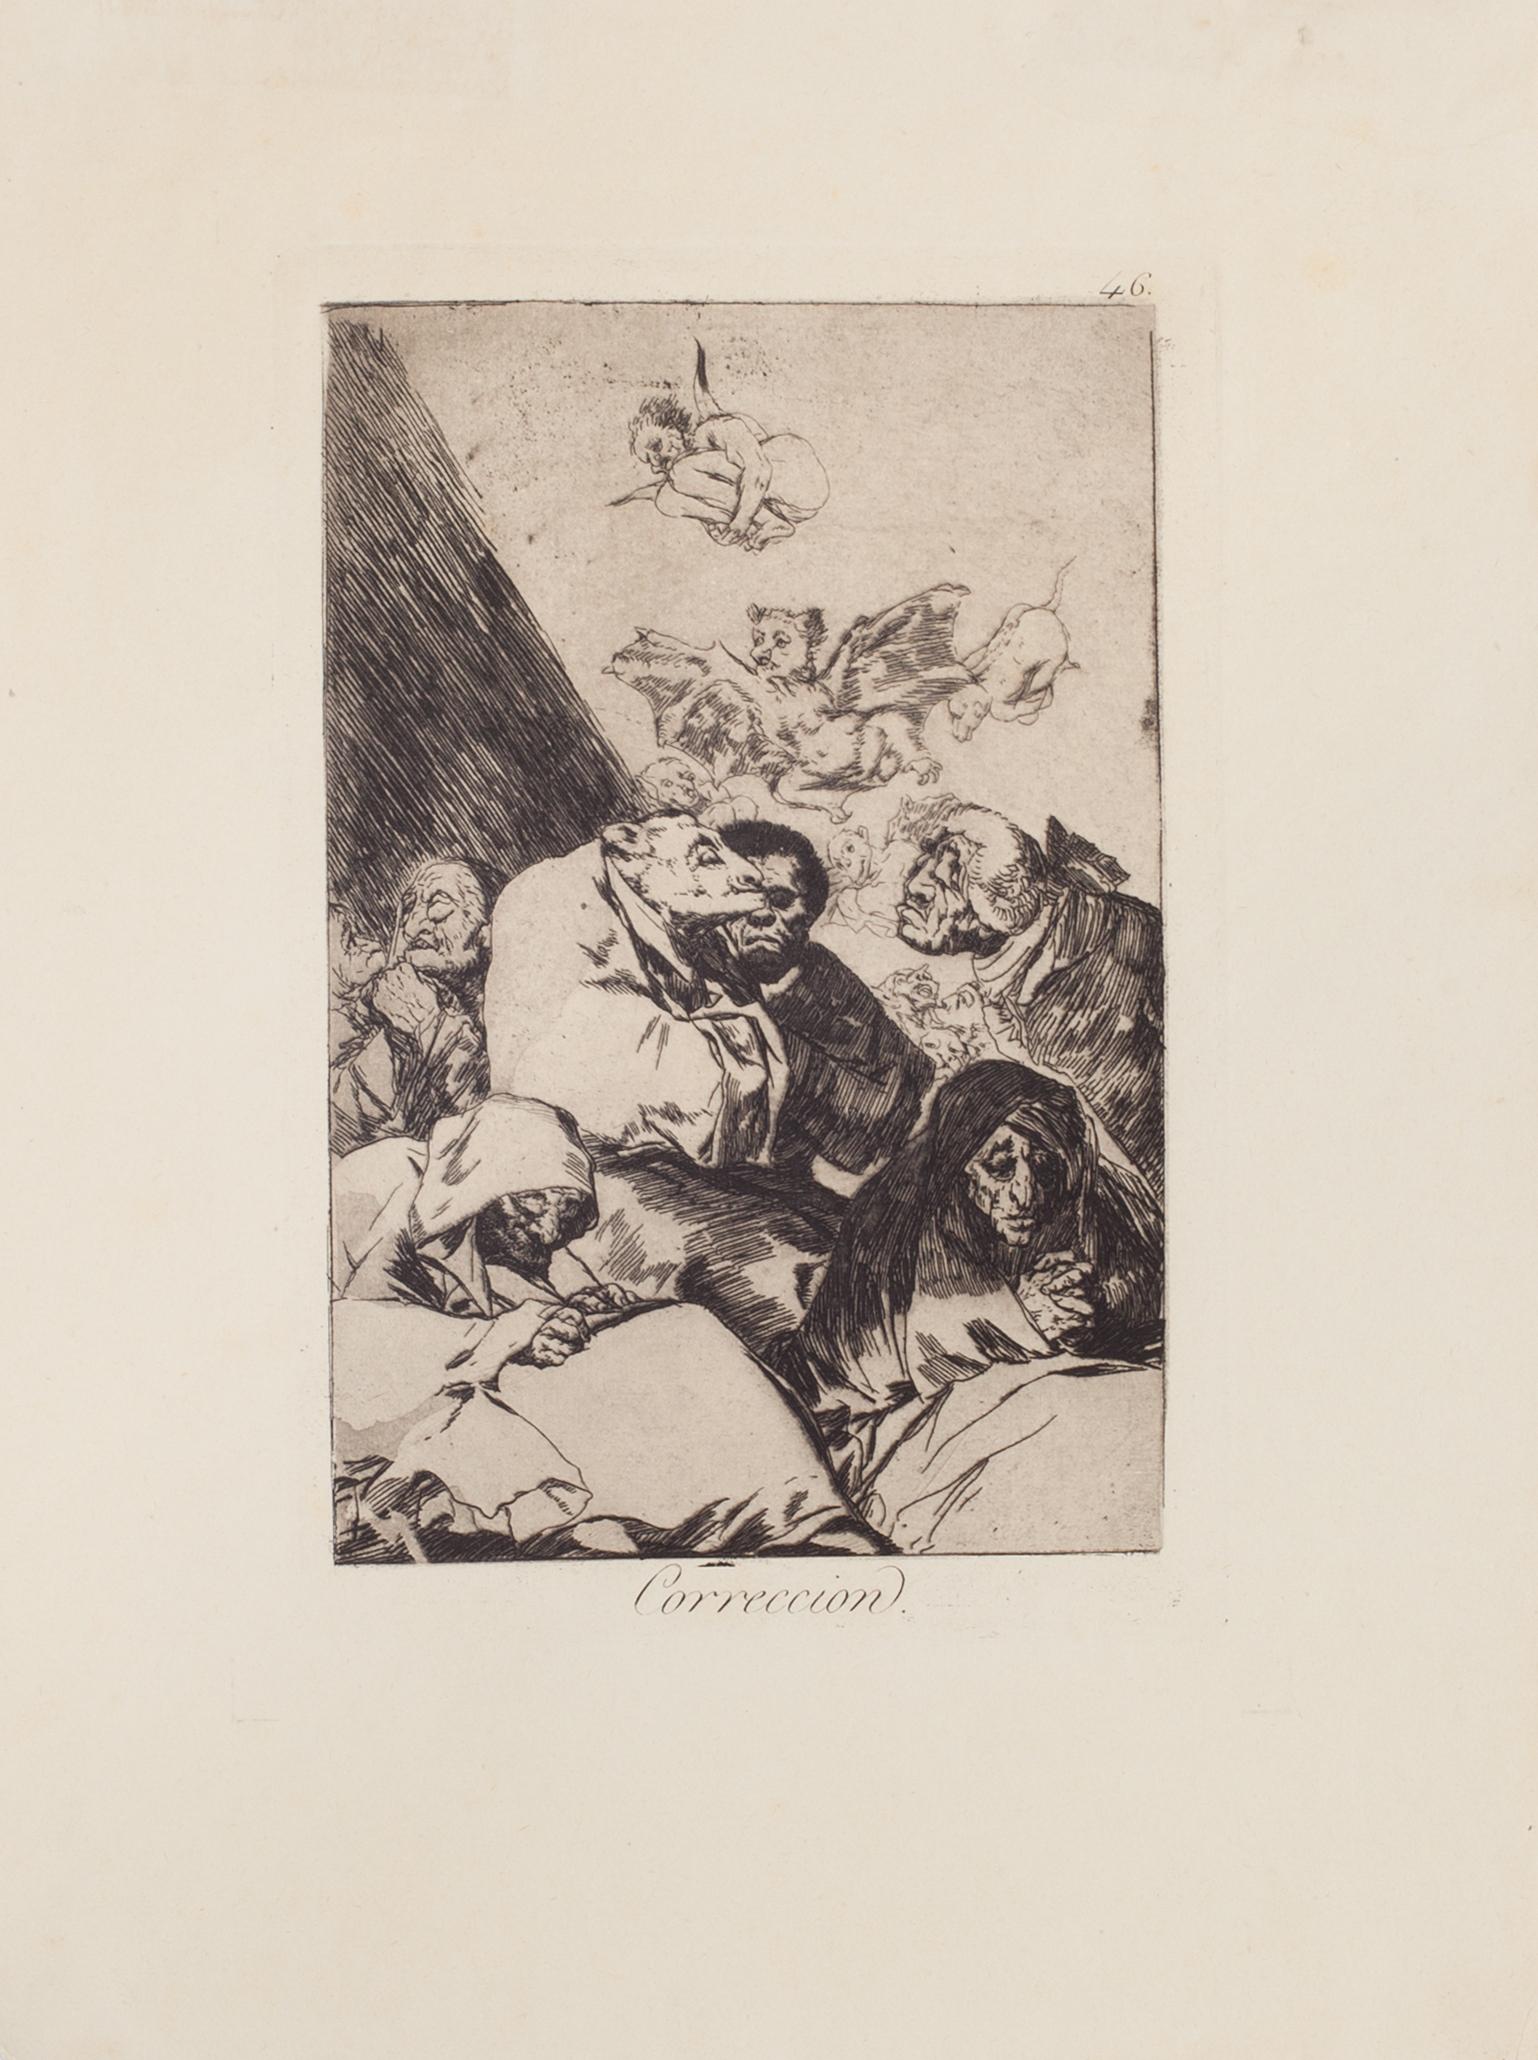 Correccion ist ein Original-Kunstwerk von Francisco Goya, das 1799 zum ersten Mal veröffentlicht wurde.

Radierung auf Velin.

Dieses Kunstwerk gehört zur dritten Ausgabe, die 1868 von der Calcografia National für die Real Academia veröffentlicht